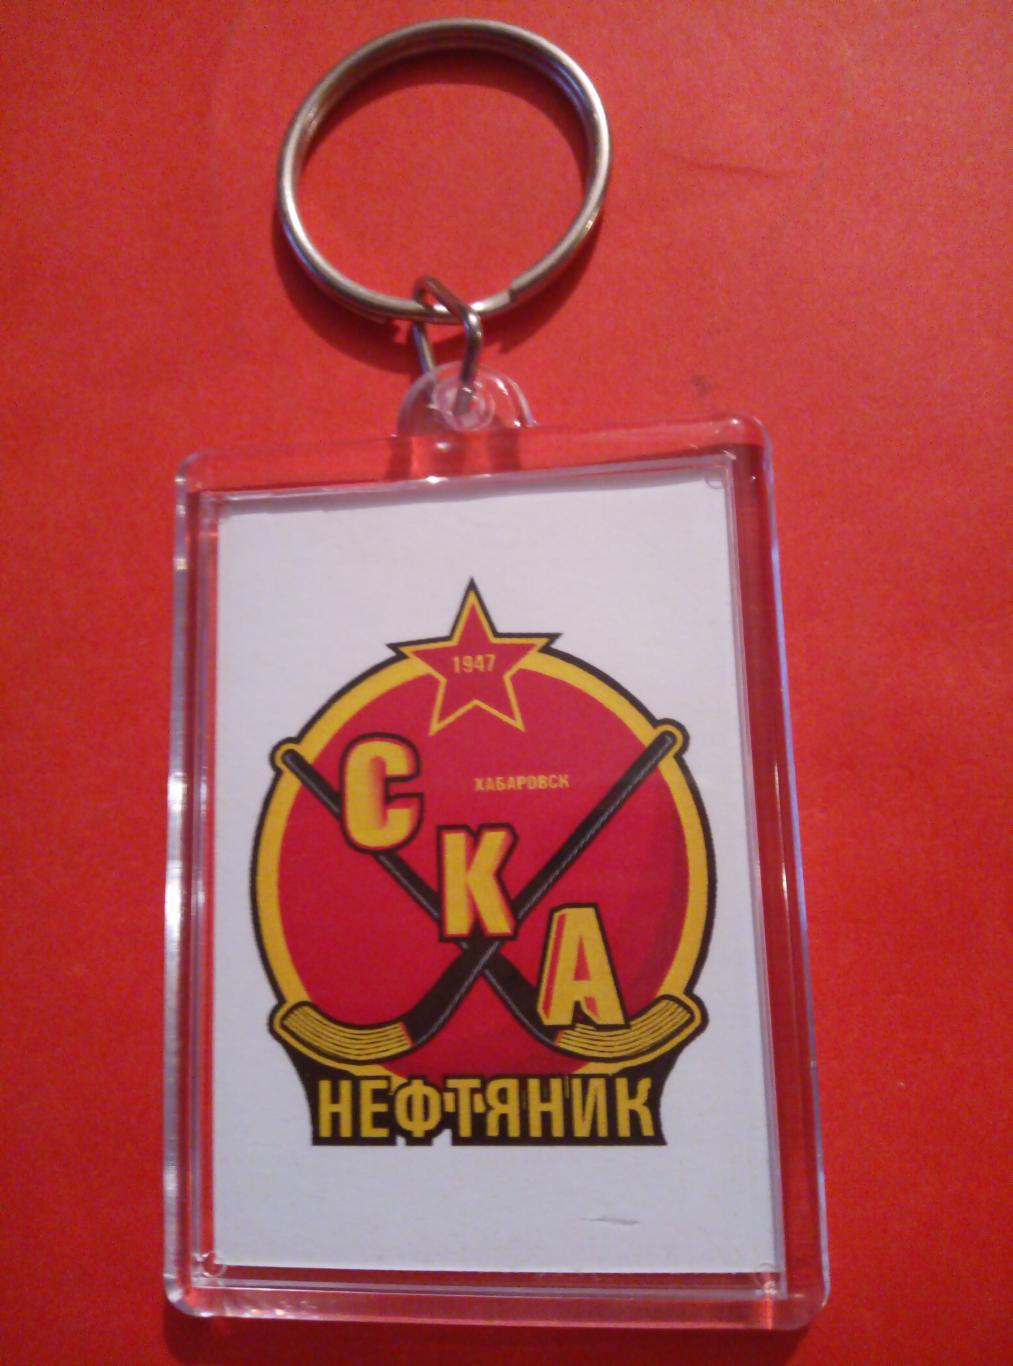 Брелок СКА-Нефтяник Хабаровск (официальный, кабан, пластик)